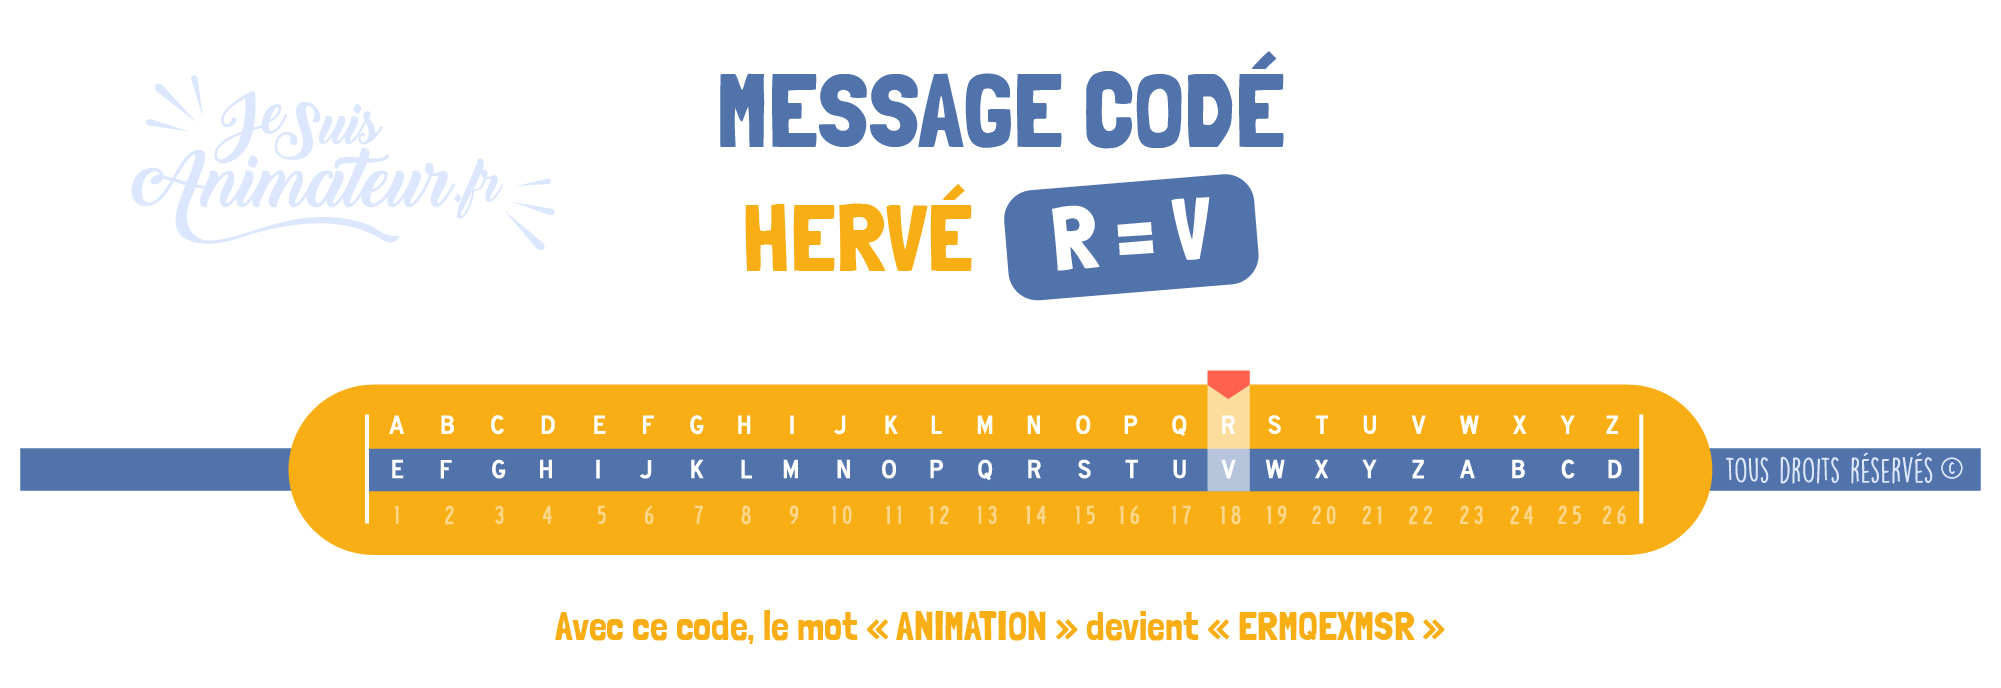 Message codé « Hervé » (R = V)